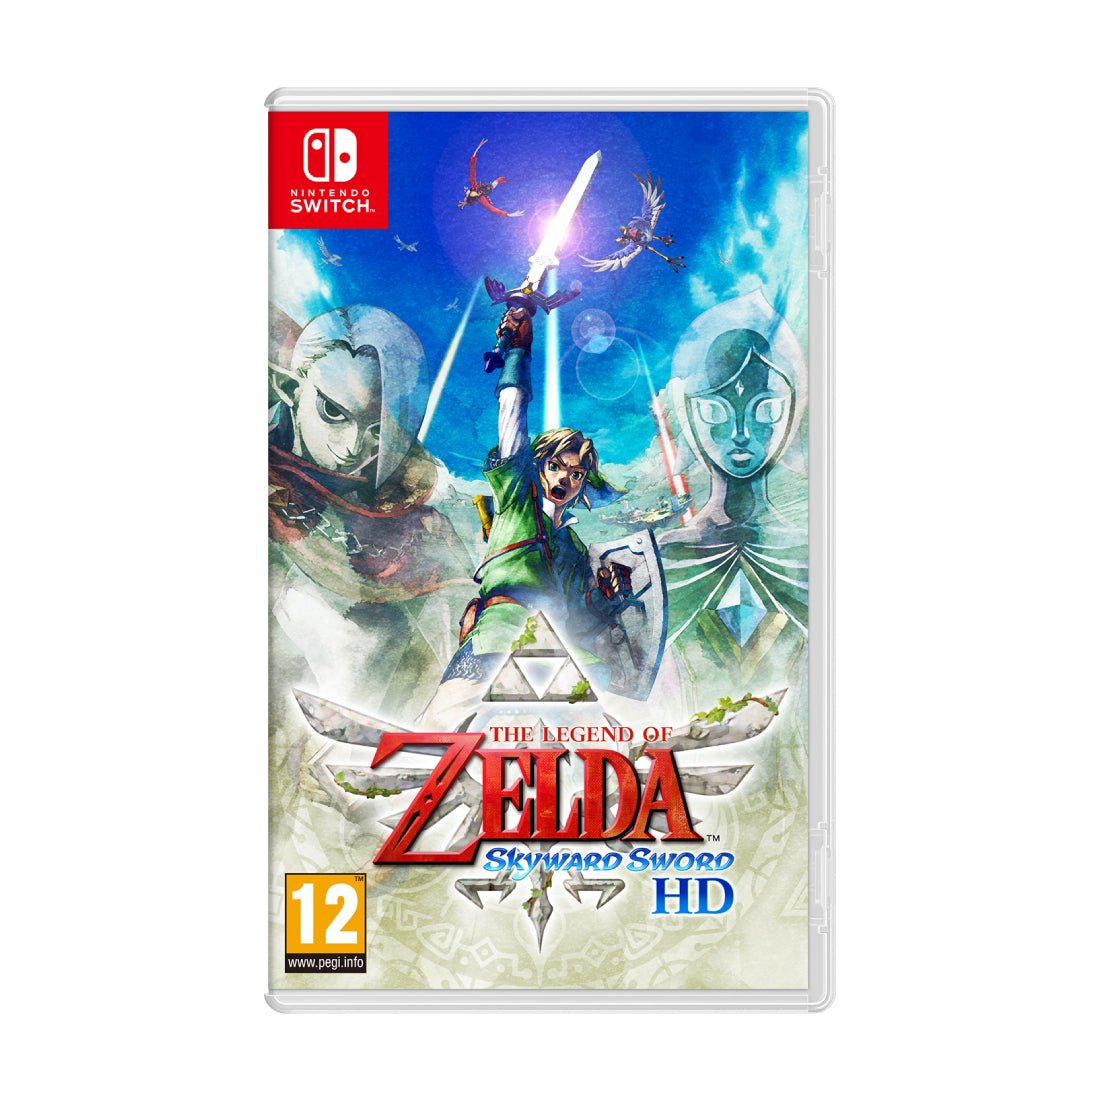 The Legend of Zelda: Skyward Sword HD - Nintendo Switch - Store 974 | ستور ٩٧٤